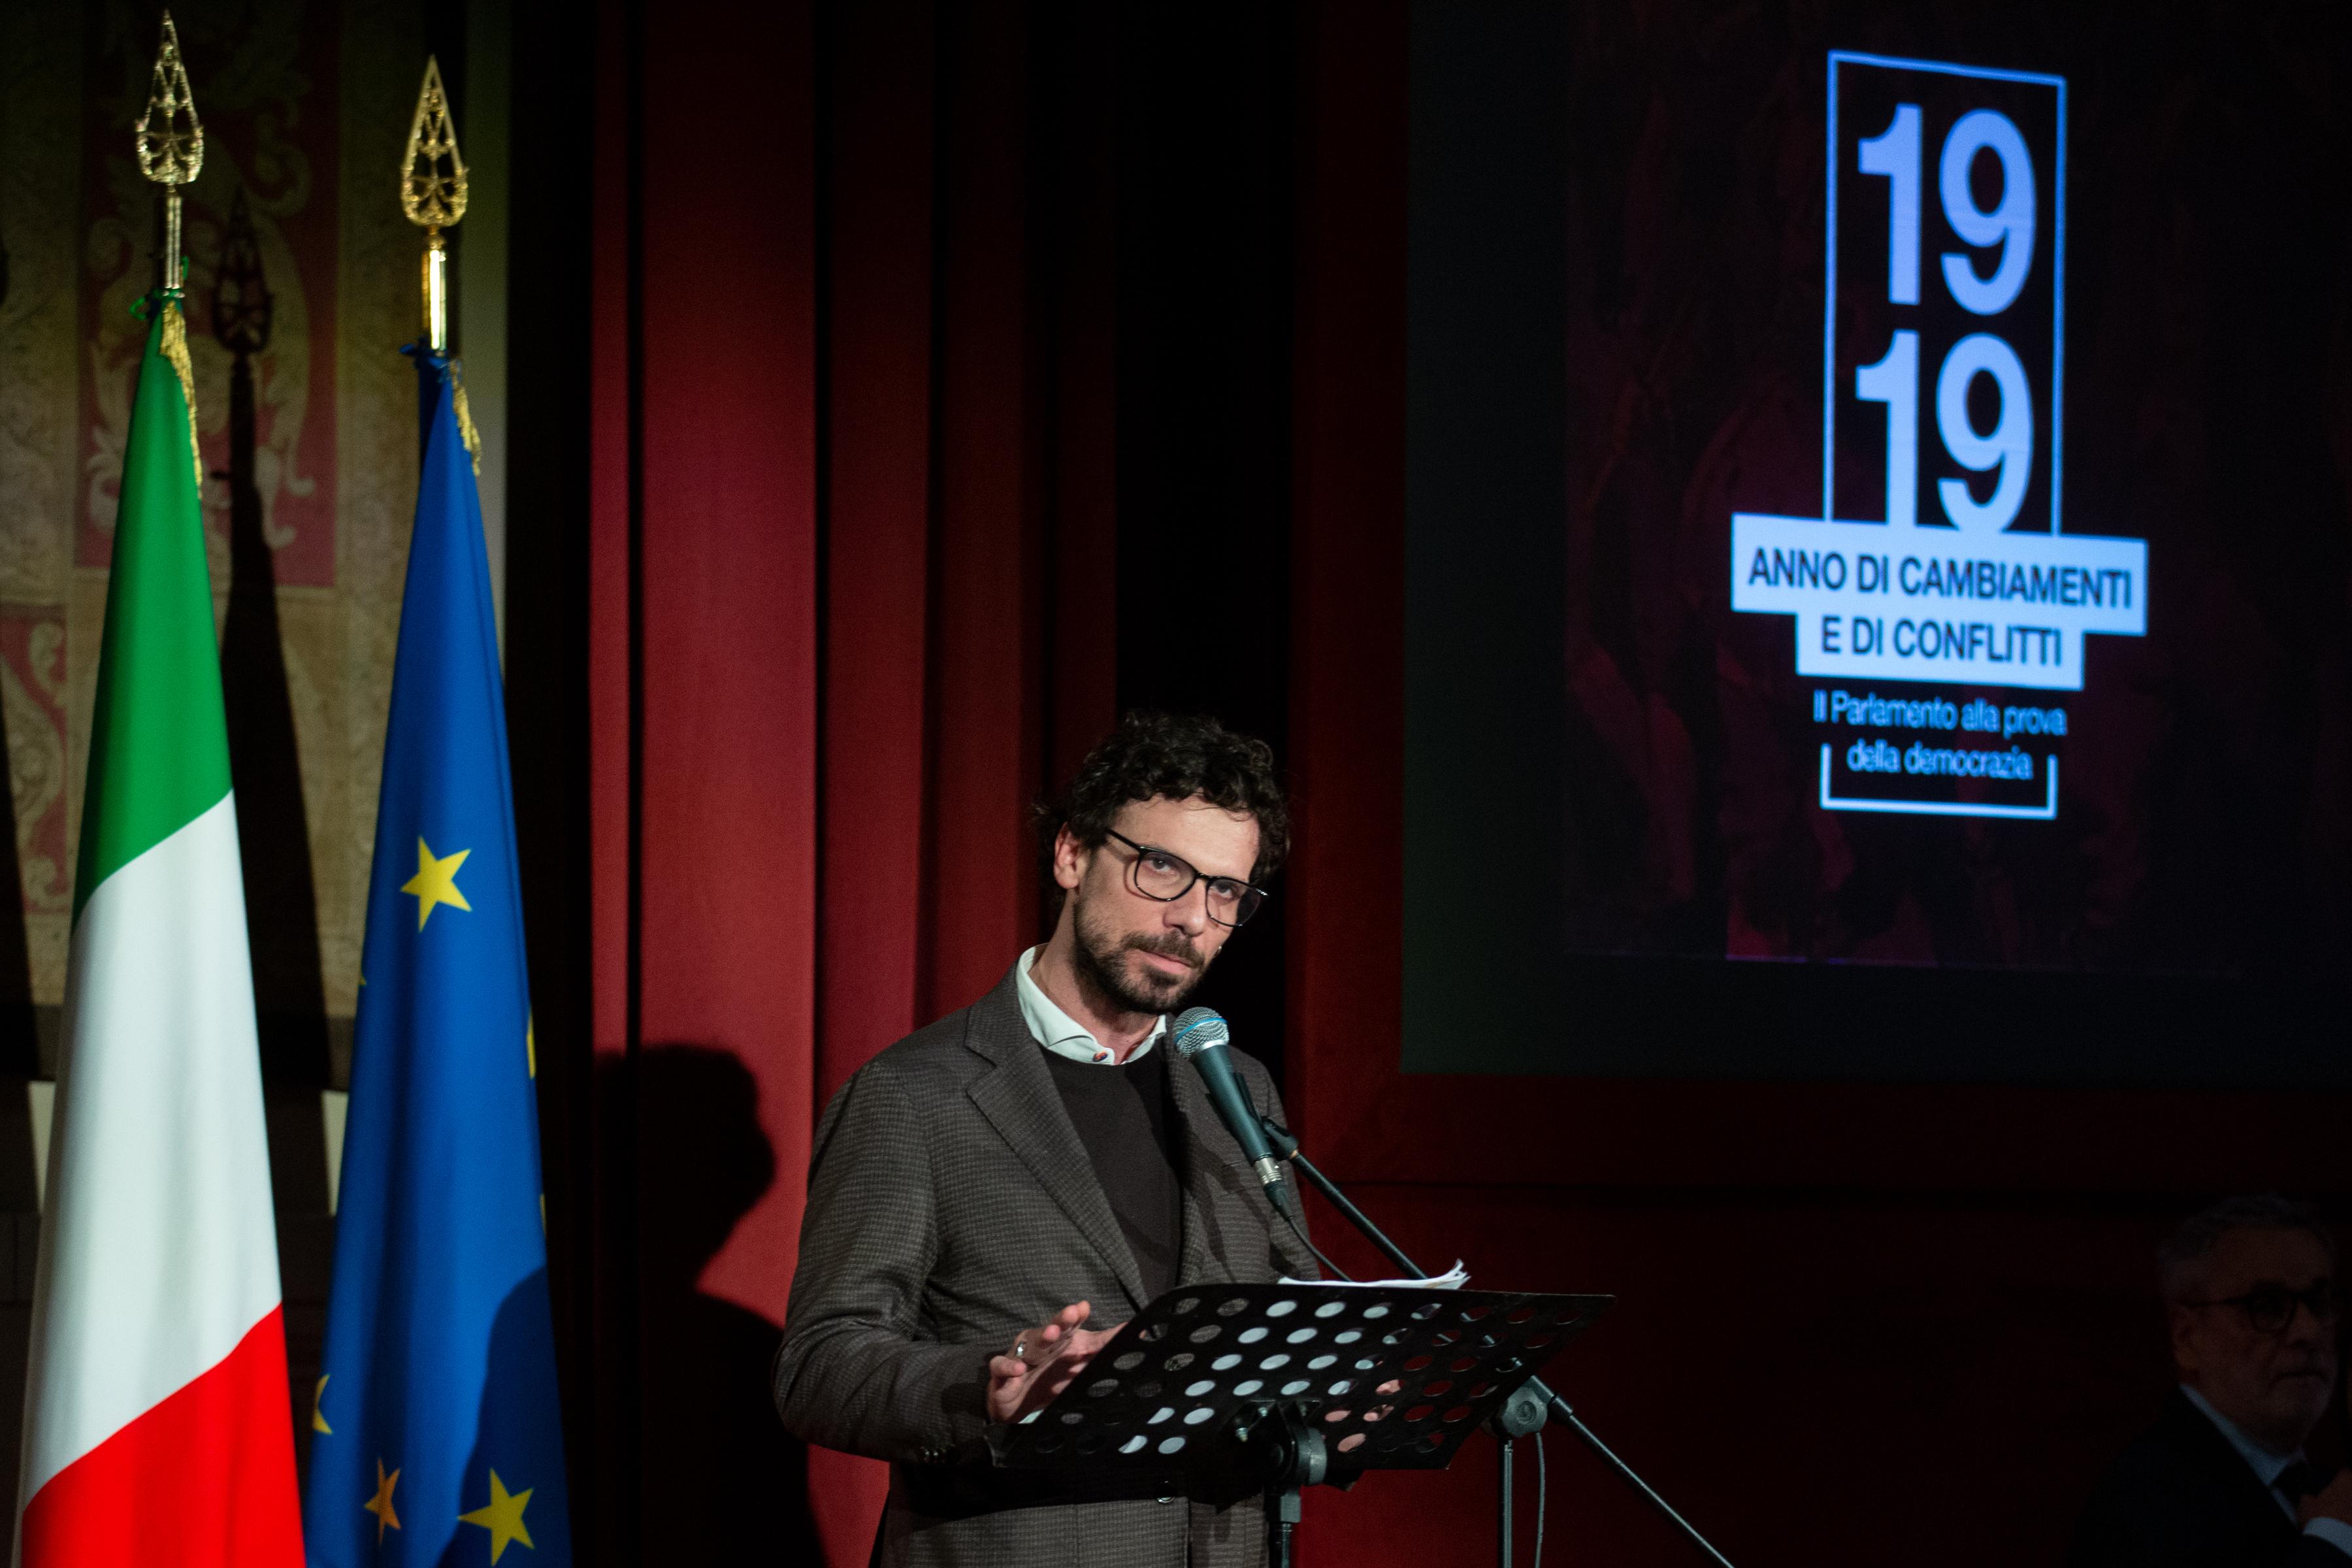 Francesco Montanari legge un brano tratto da un discorso di Claudio Treves